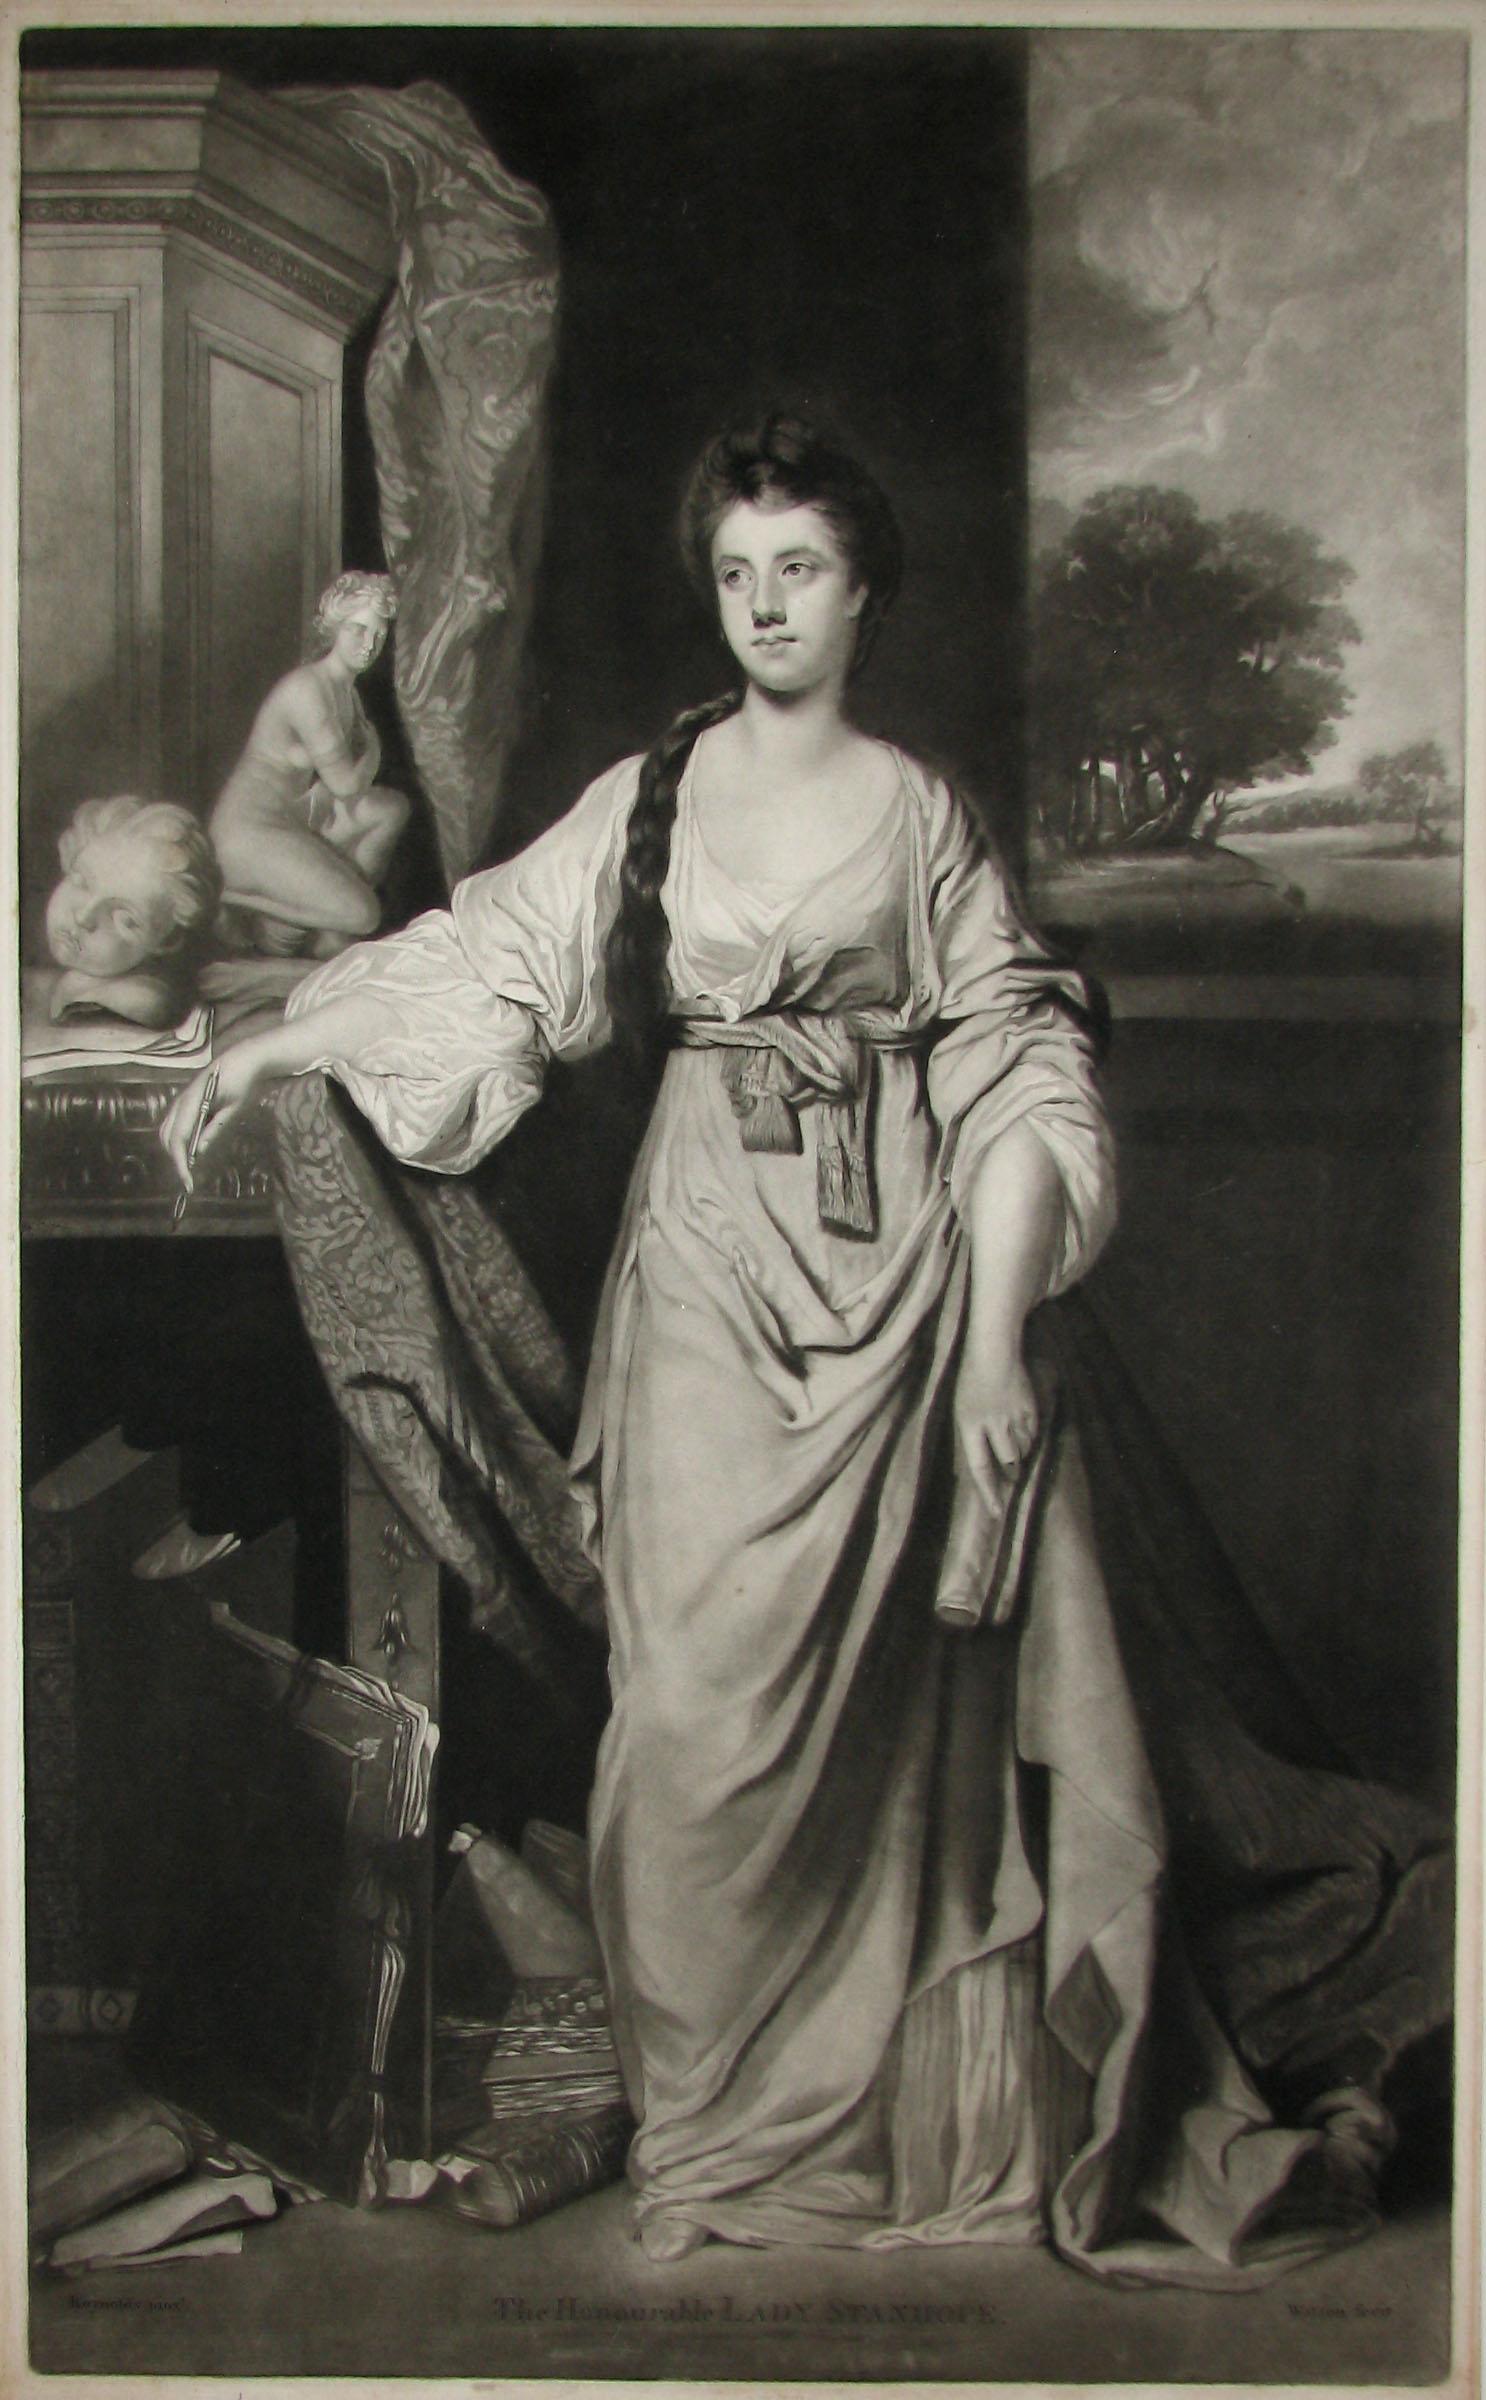 die ehrenwerte Lady Stanhope

Anne Hussey (Delaval), Lady Stanhope (gestorben 1811) war die Frau von Sir William Stanhope of Whig Park. 

James Watson (ca. 1739-1790) wurde in Irland geboren. Er zog nach London und wurde dort zu einem der führenden